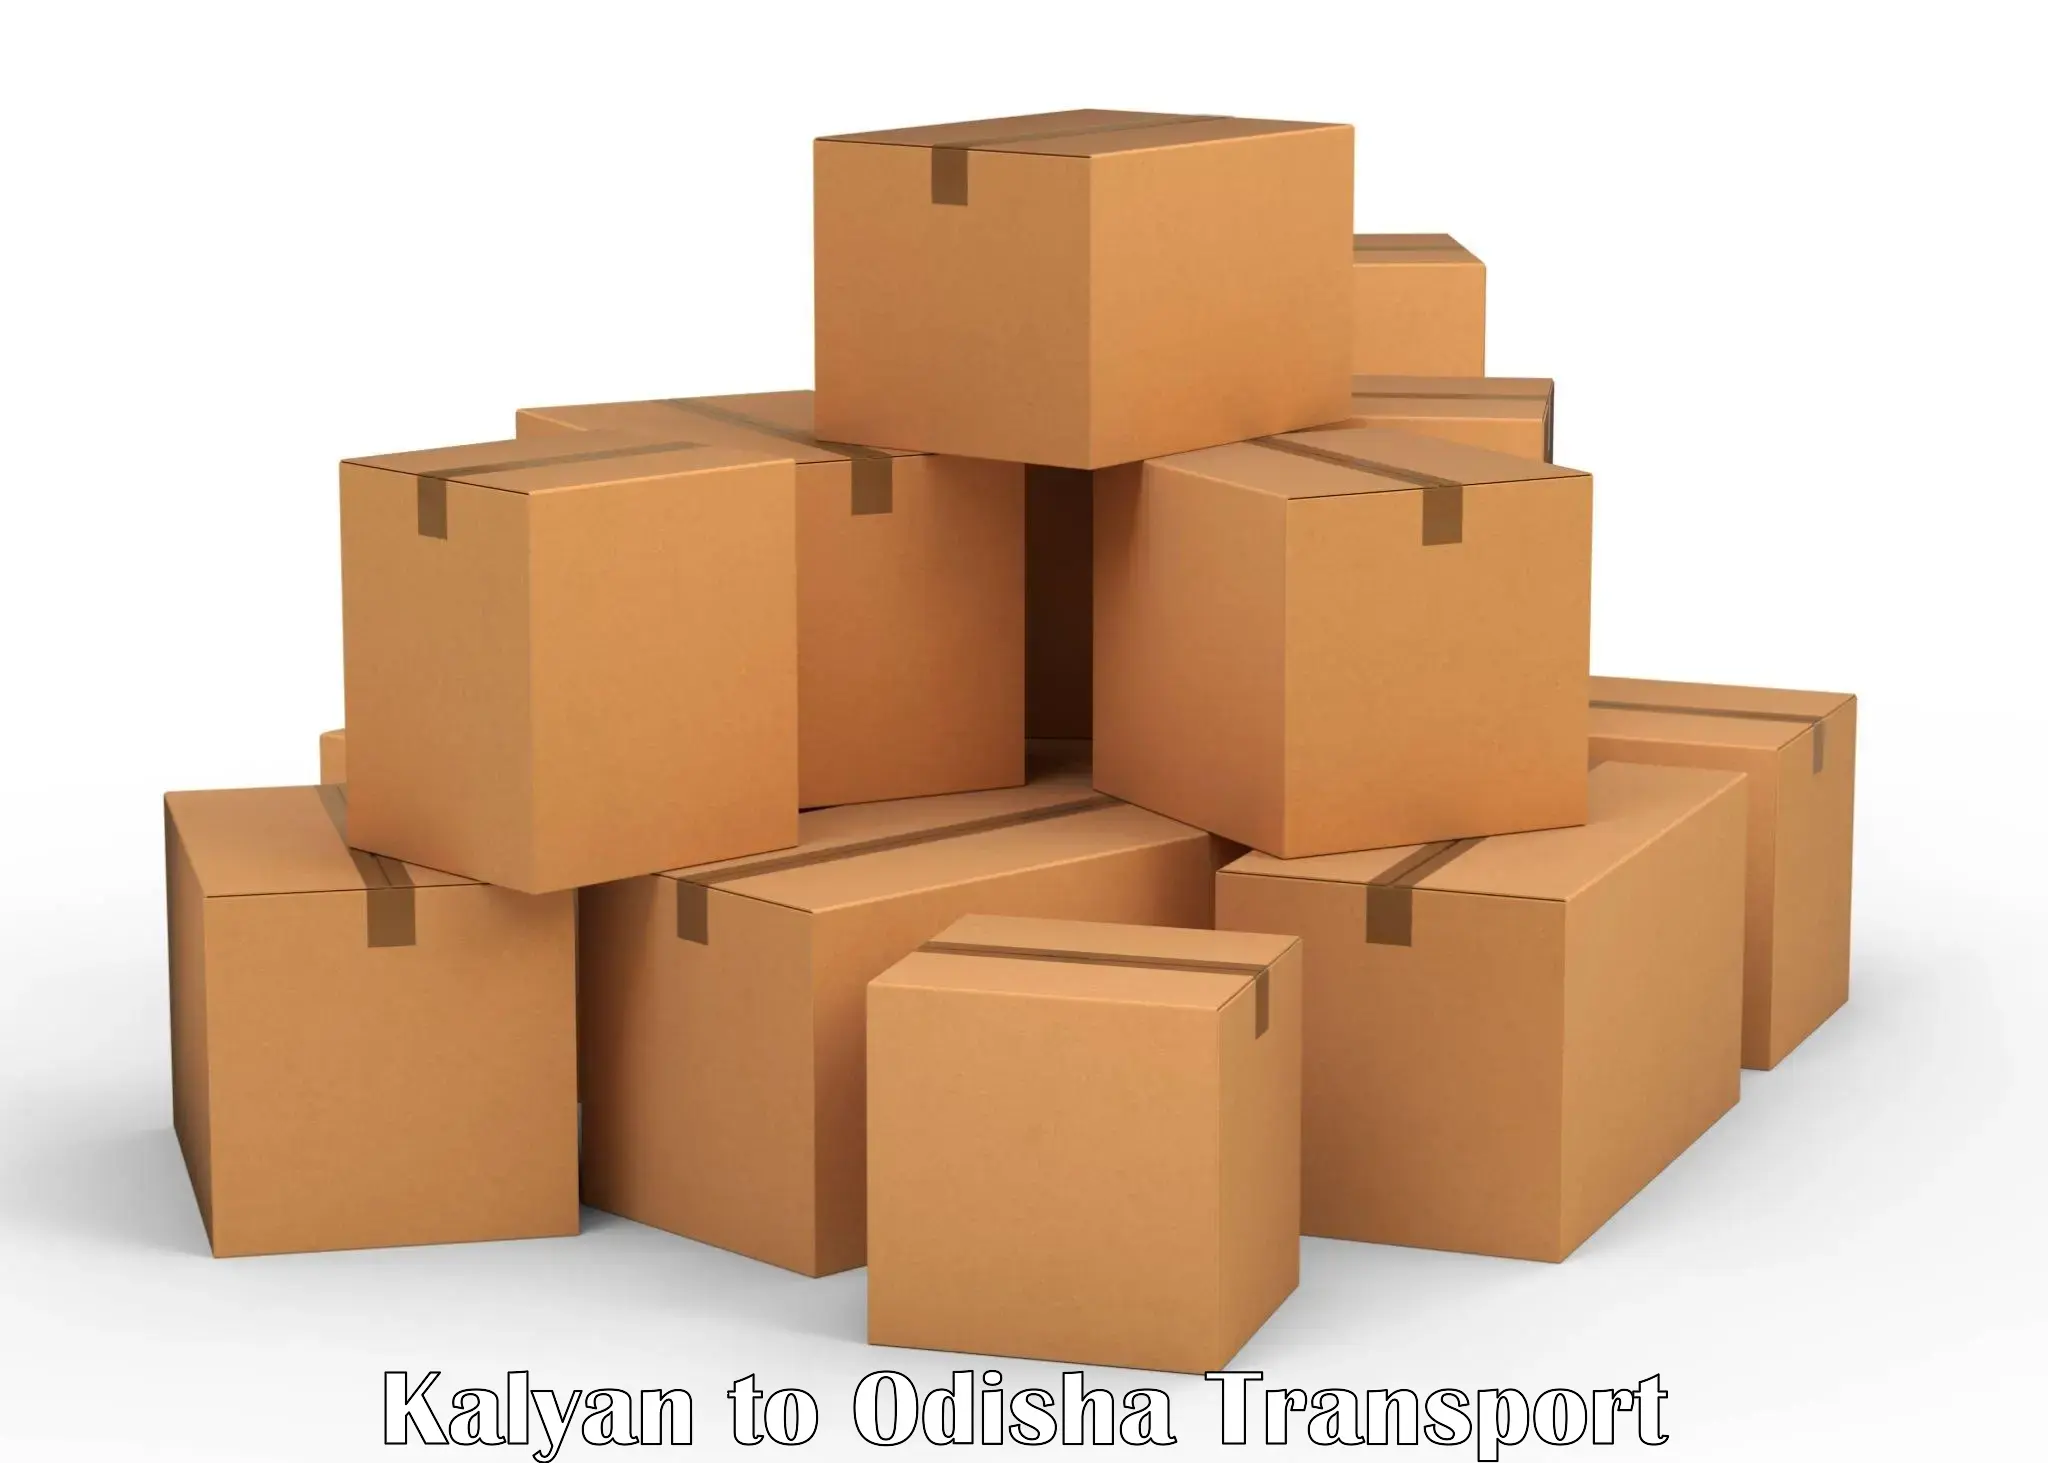 Furniture transport service Kalyan to Raighar